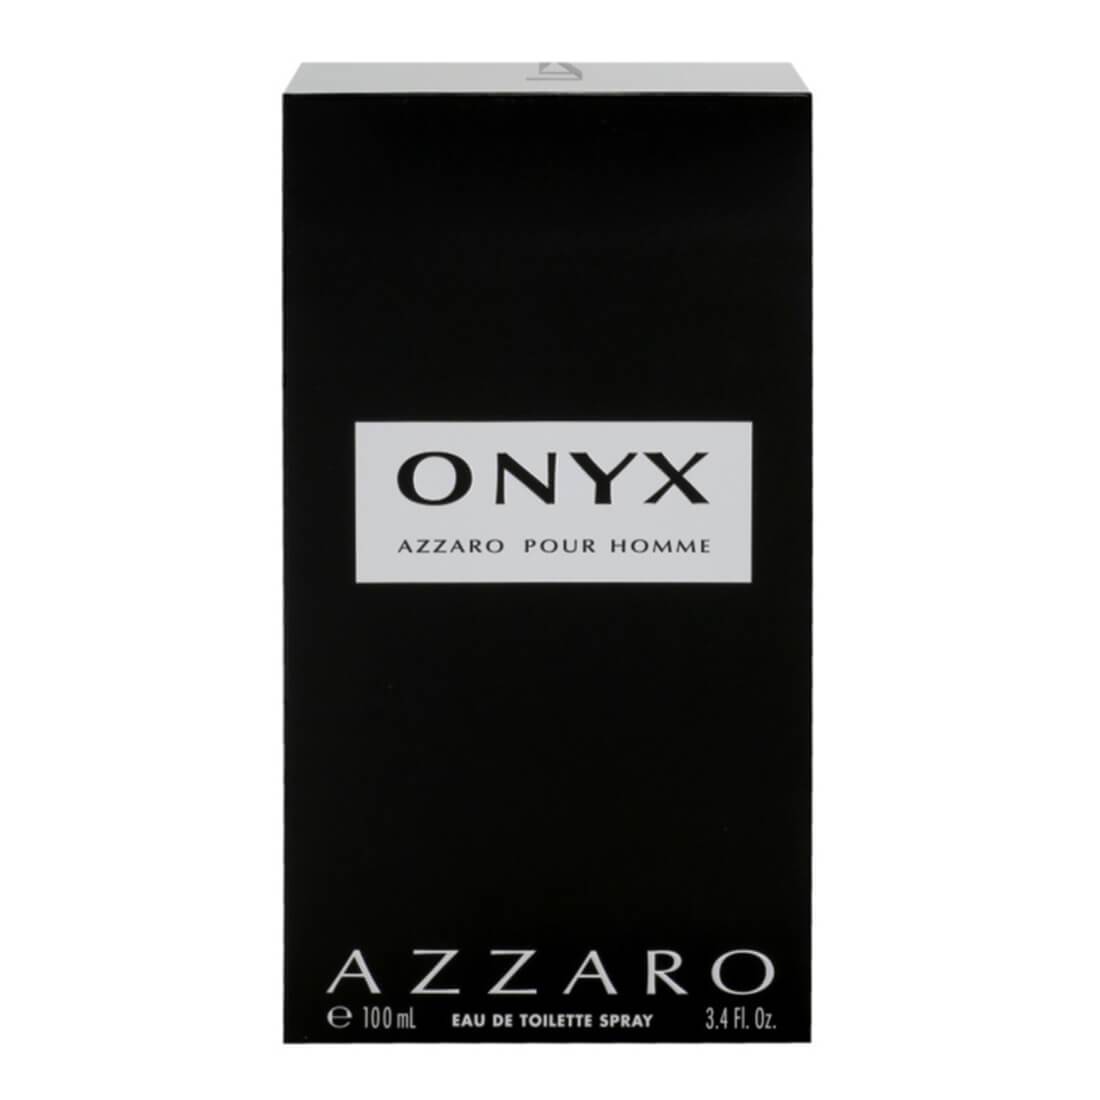 Azzaro Onyx For Men - 100ml